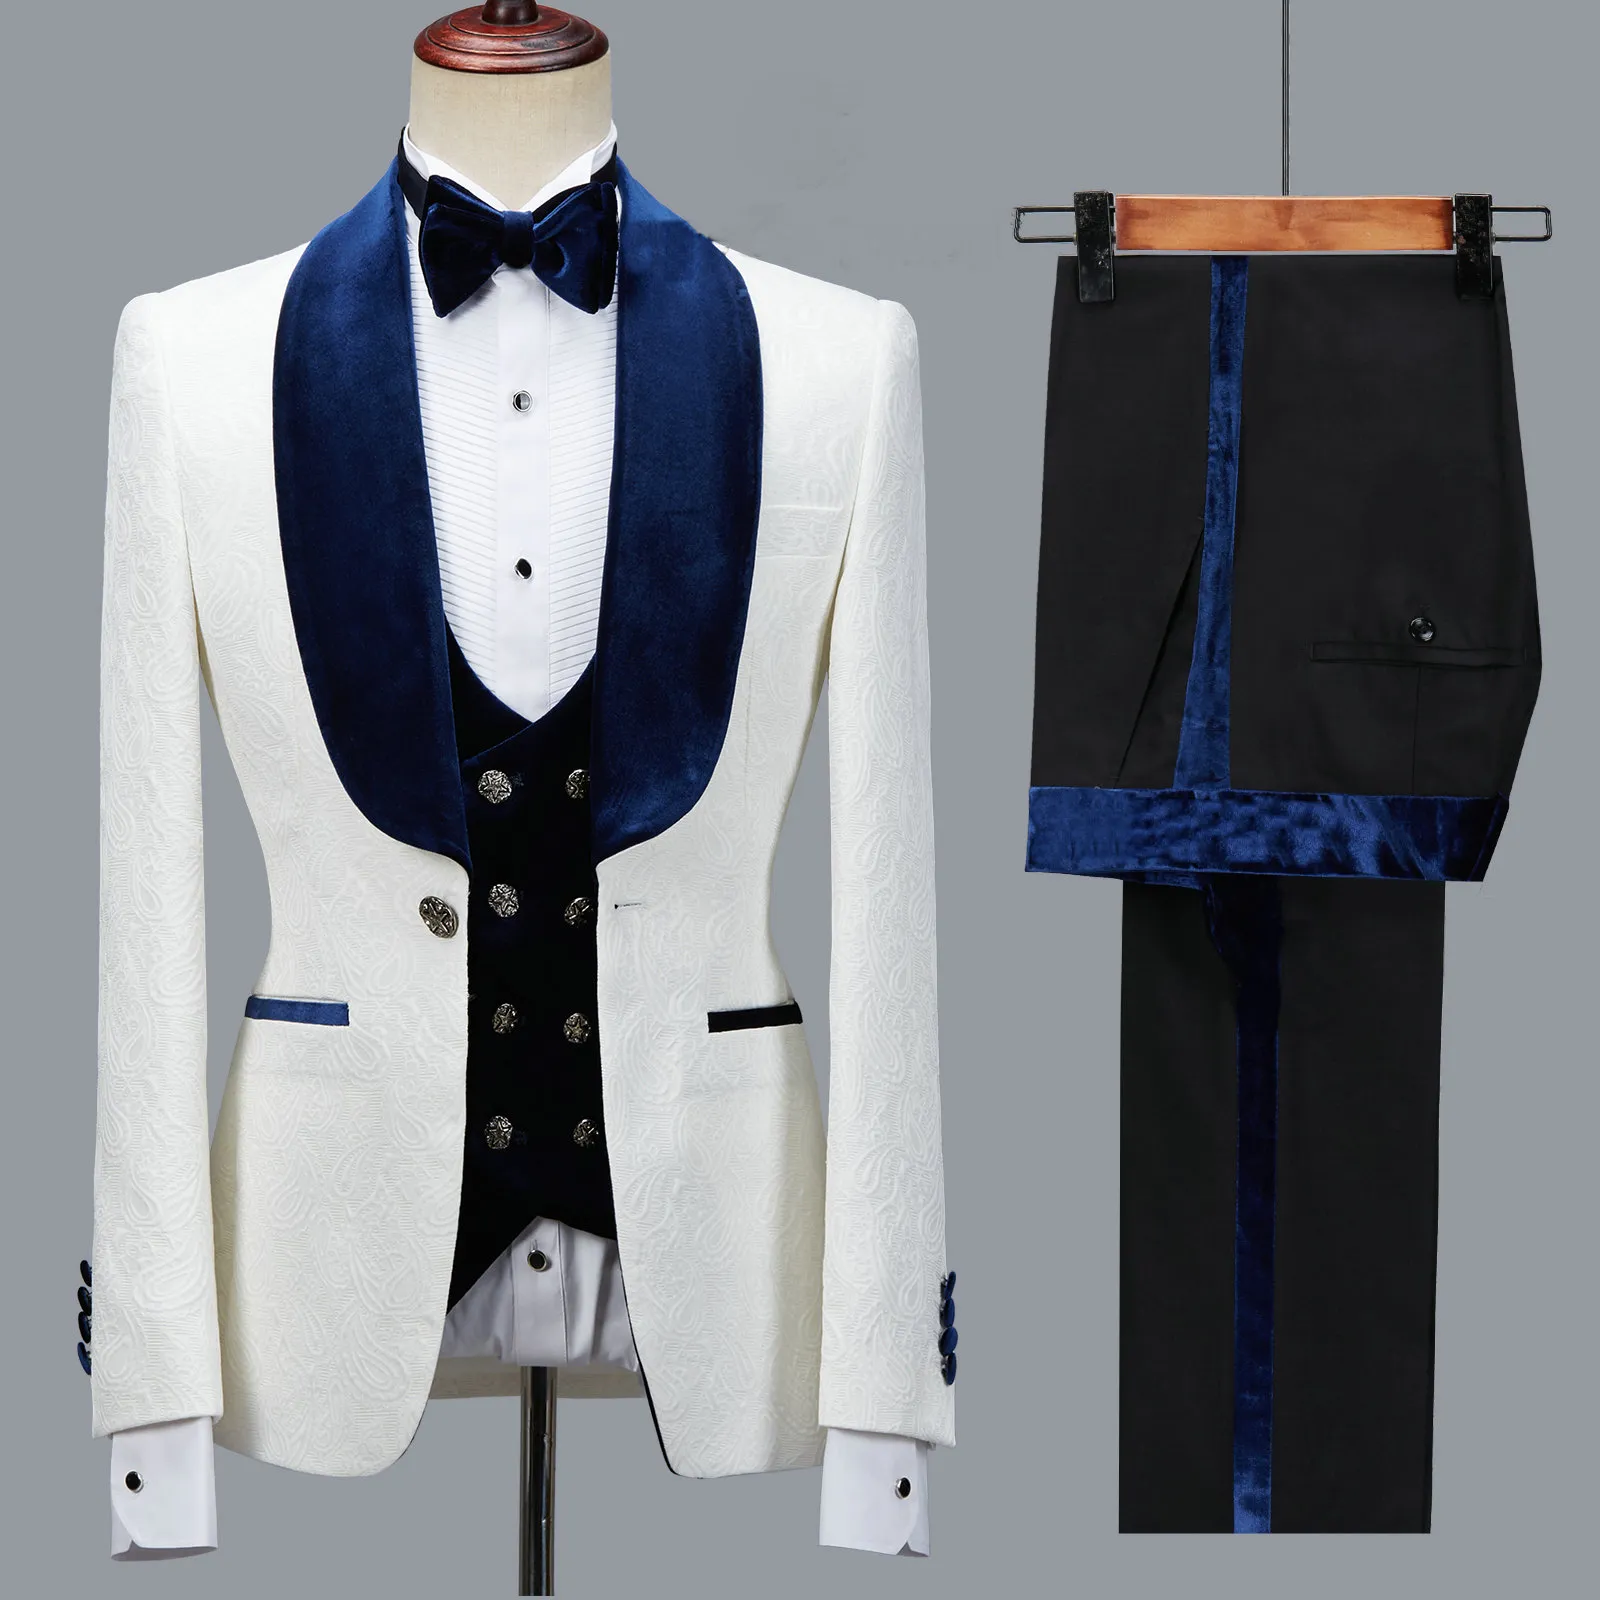 Yeni Varış Çiçek Erkekler Suit Slim Fit Düğün Smokin Donanma Mavi Kadife Yaka Damat Parti Kostüm Homme Groomsman Blazer Suits